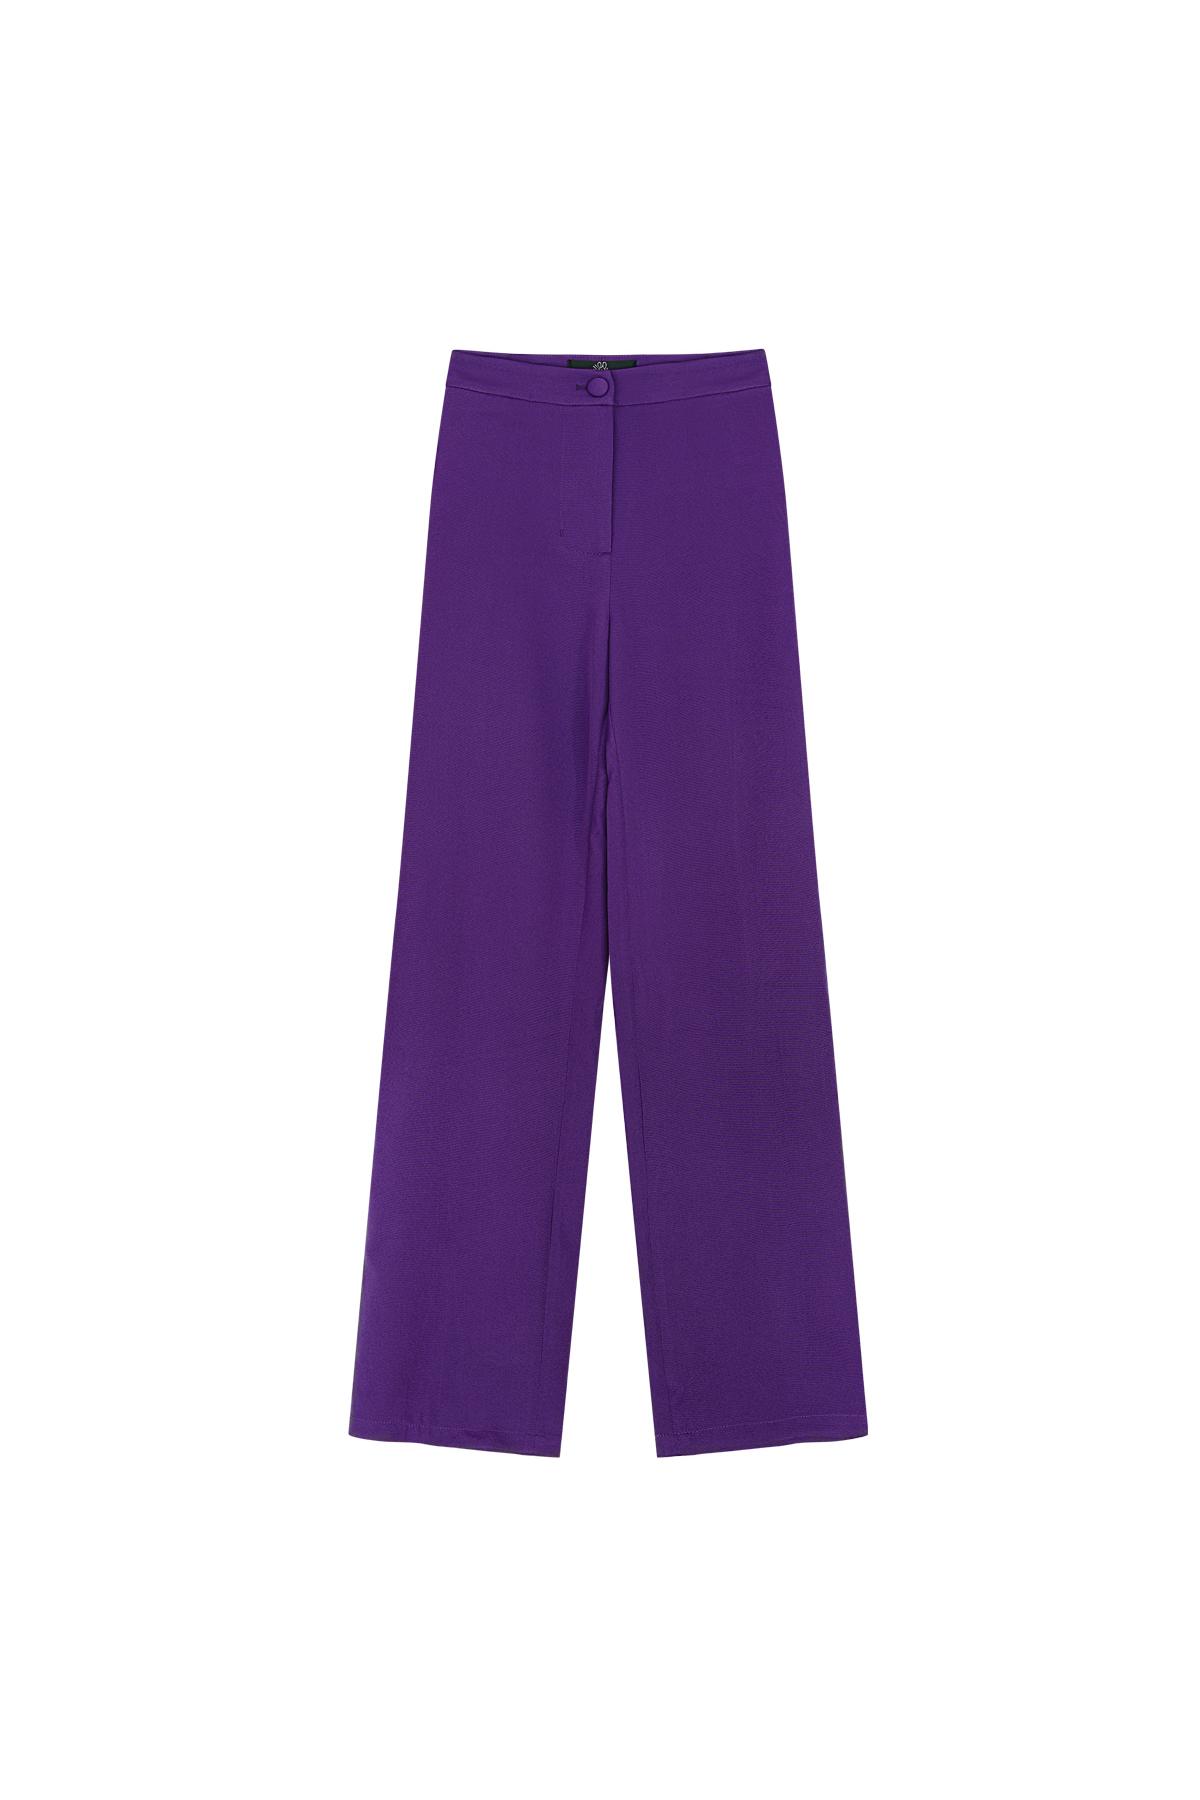 Pantalon basique - Les indispensables des vacances Violet S